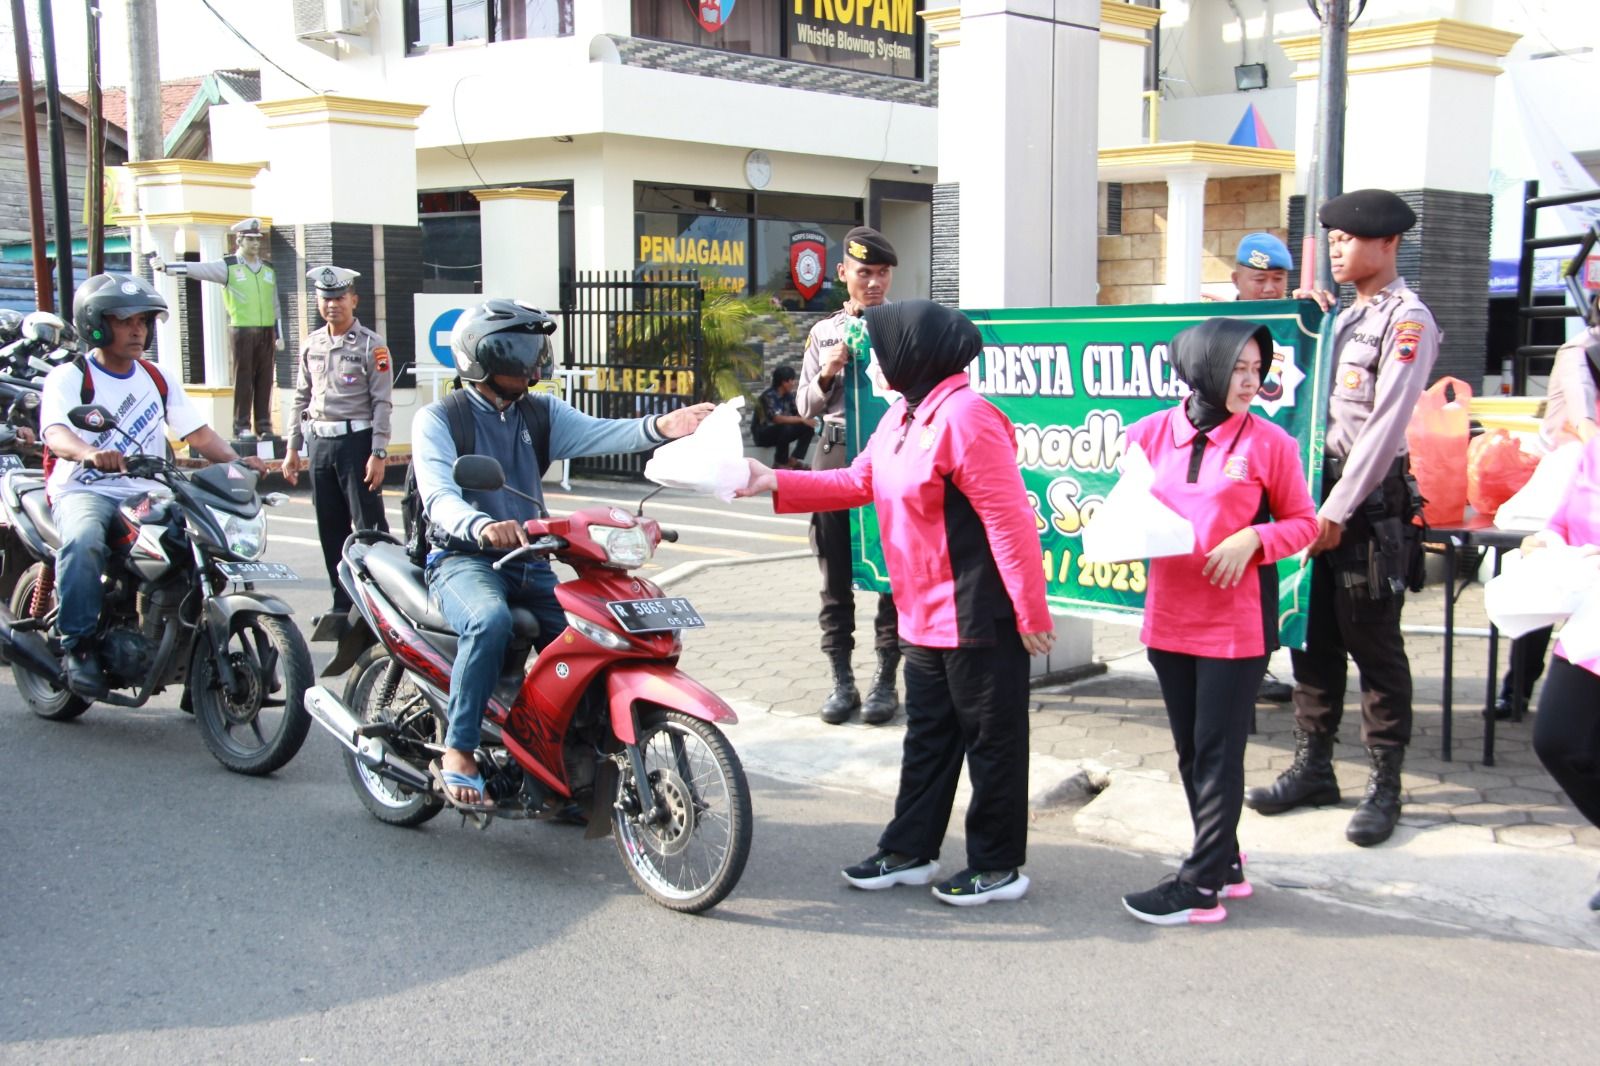 Peduli sesama dengan menebar kebaikan, Polresta Cilacap melaksanakan bagi-bagi takjil kepada masyarakat pengguna jalan. 